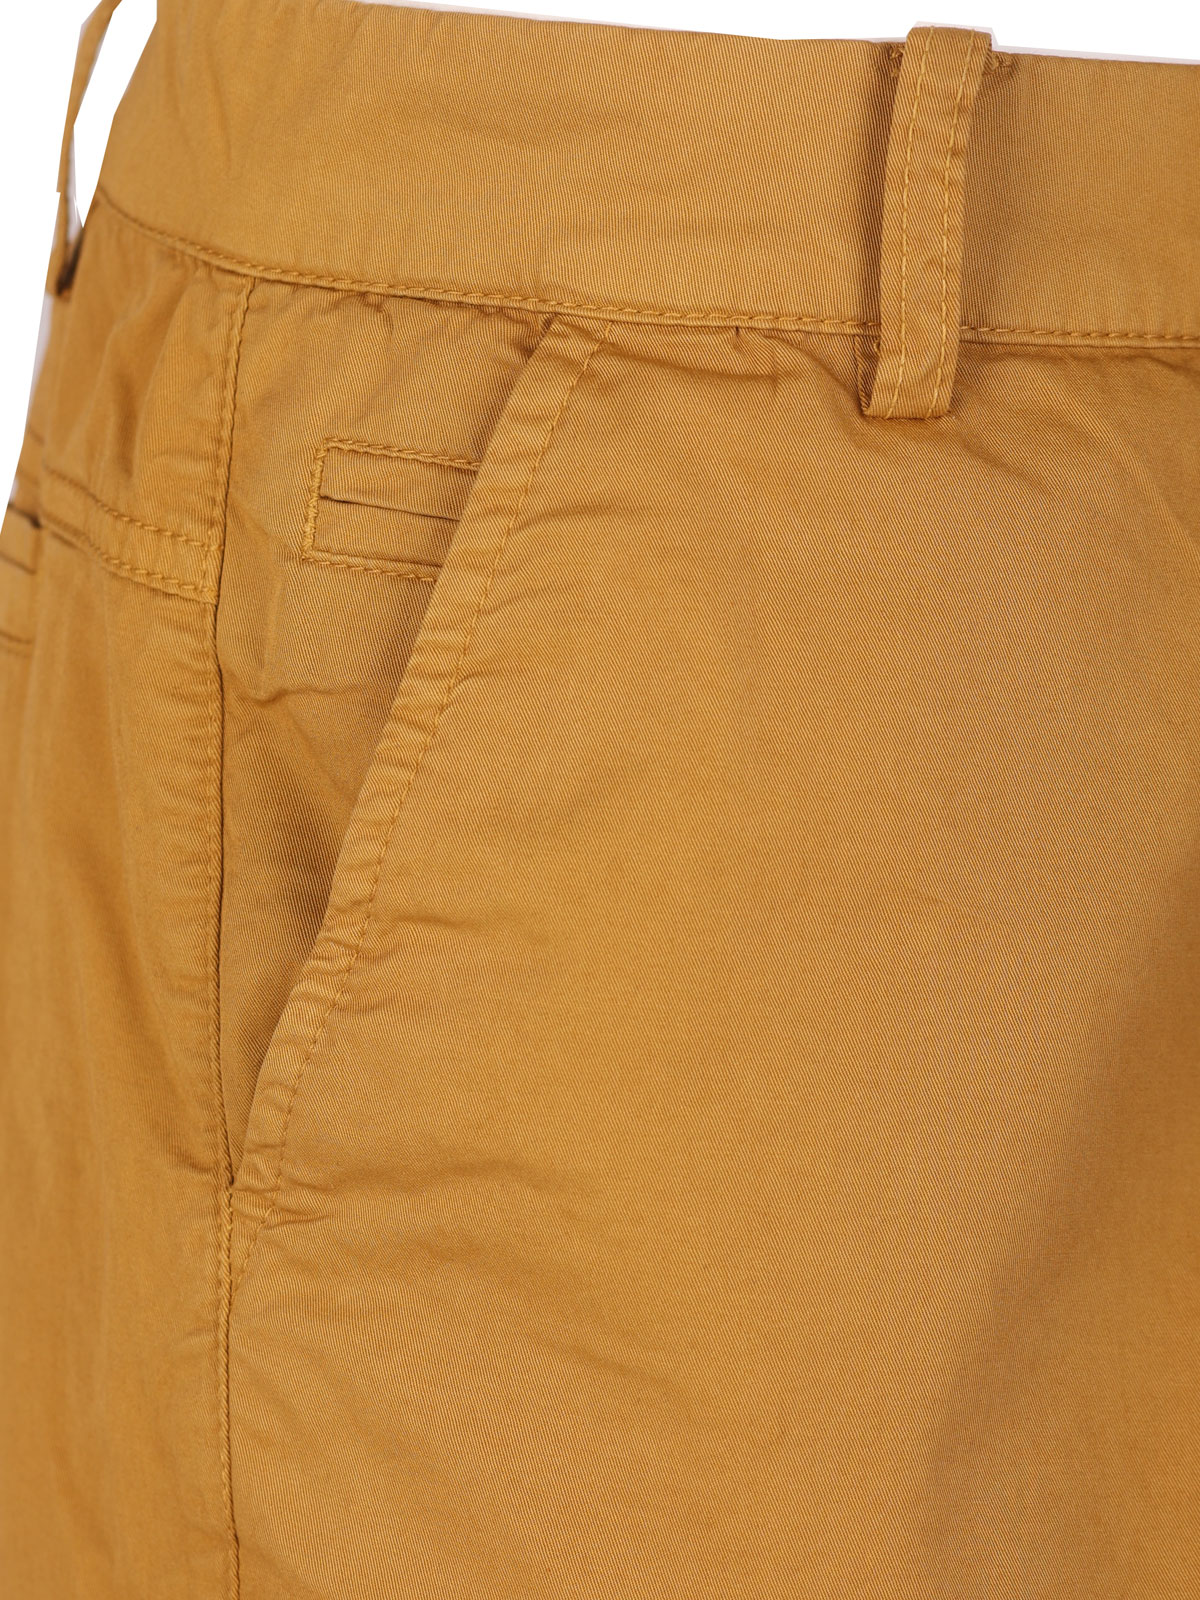 Κοντό παντελόνι σε μουσταρδί χρώμα - 67094 € 43.87 img2